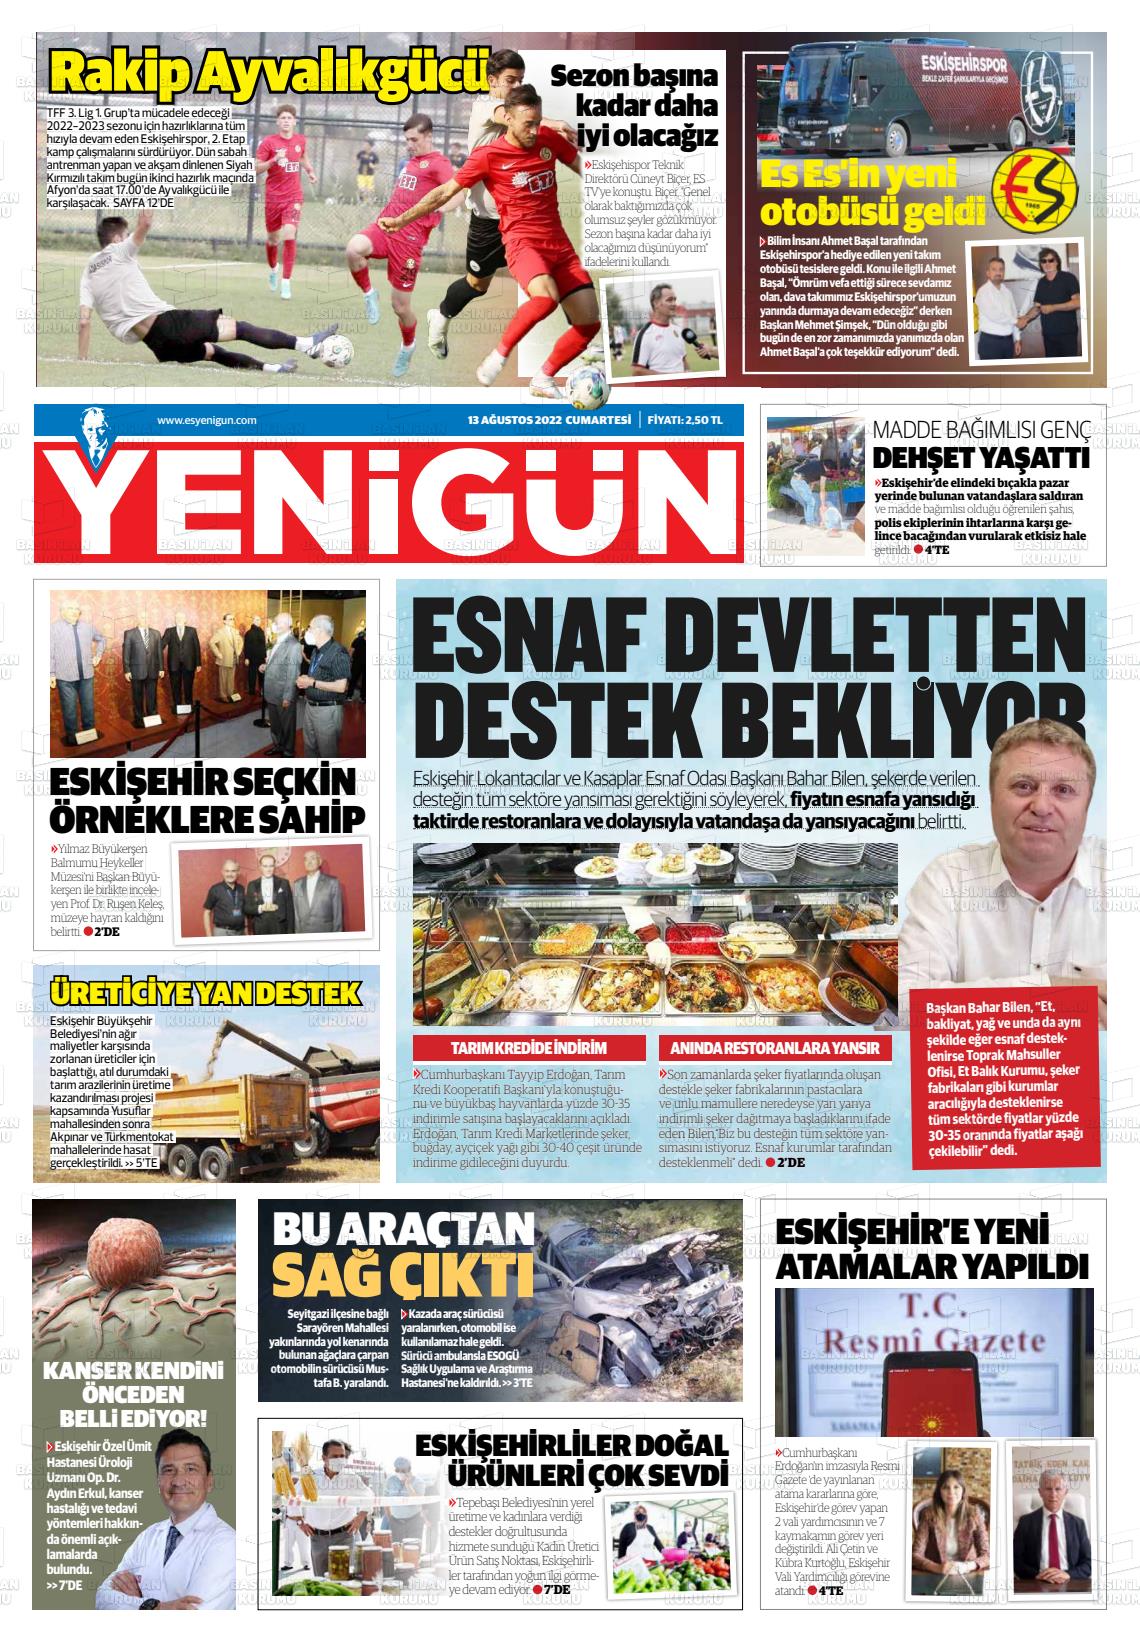 13 Ağustos 2022 Eskişehir Yeni Gün Gazete Manşeti